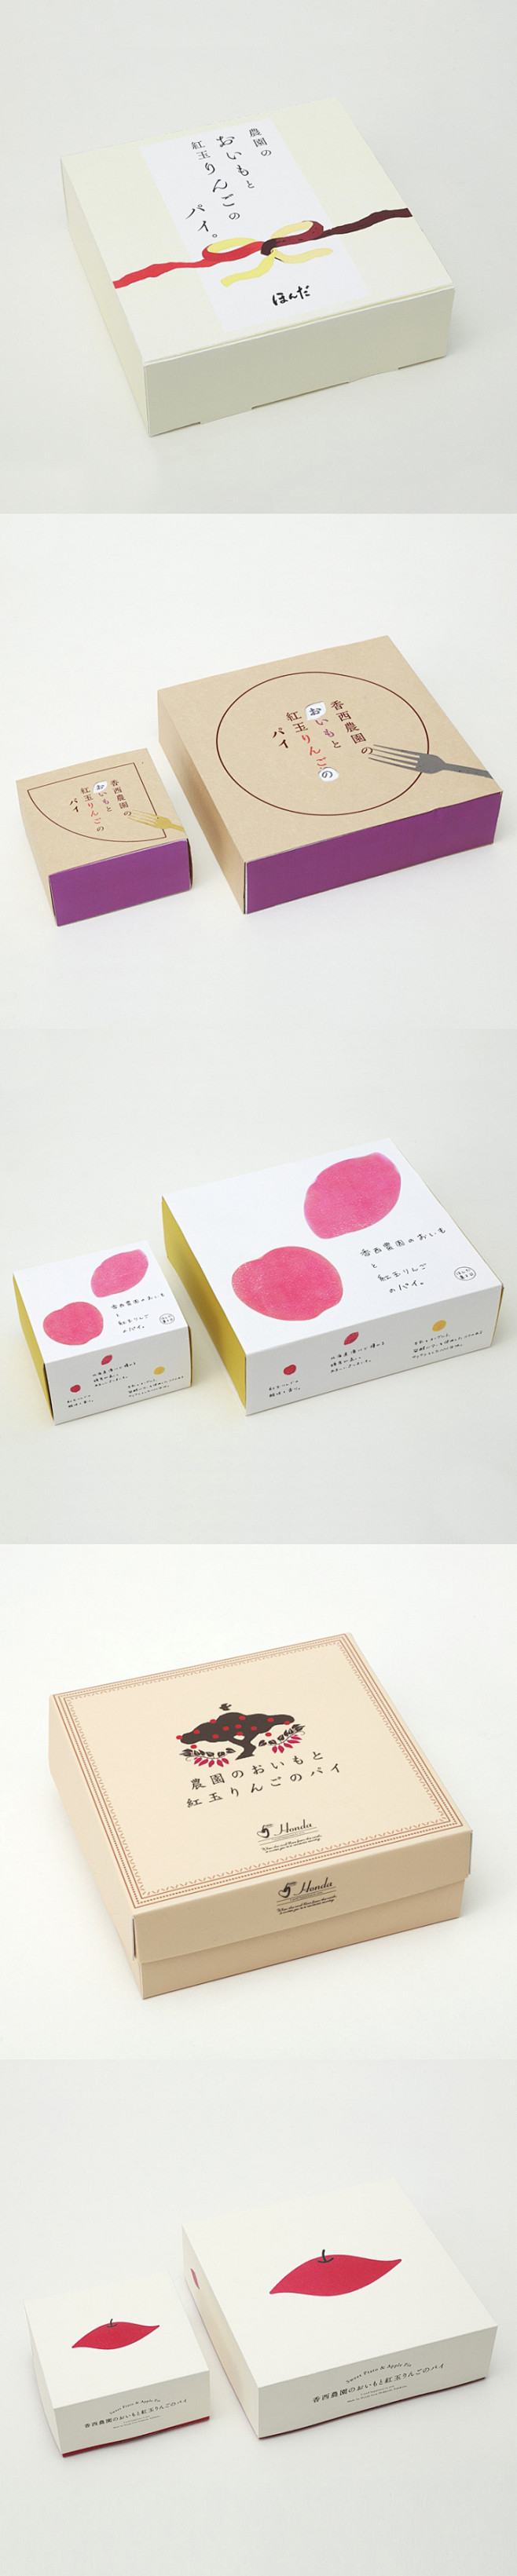 【日式美学】日式包装设计 只能说太美了